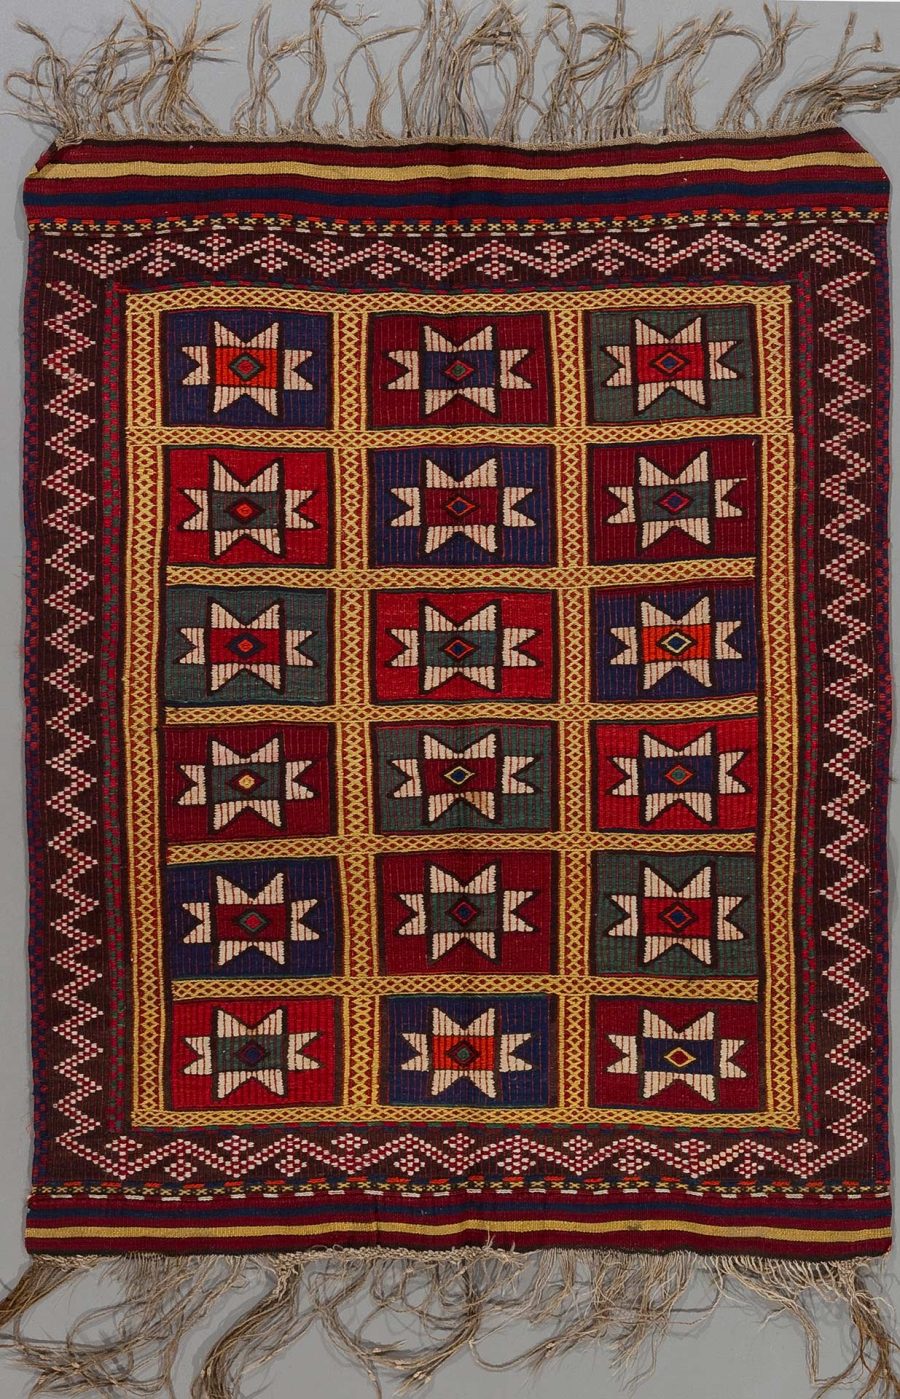 Traditioneller handgewebter Teppich mit Fransen und geometrischem Muster in Rot-, Blau-, Grün- und Beigetönen auf dunklem Grund.